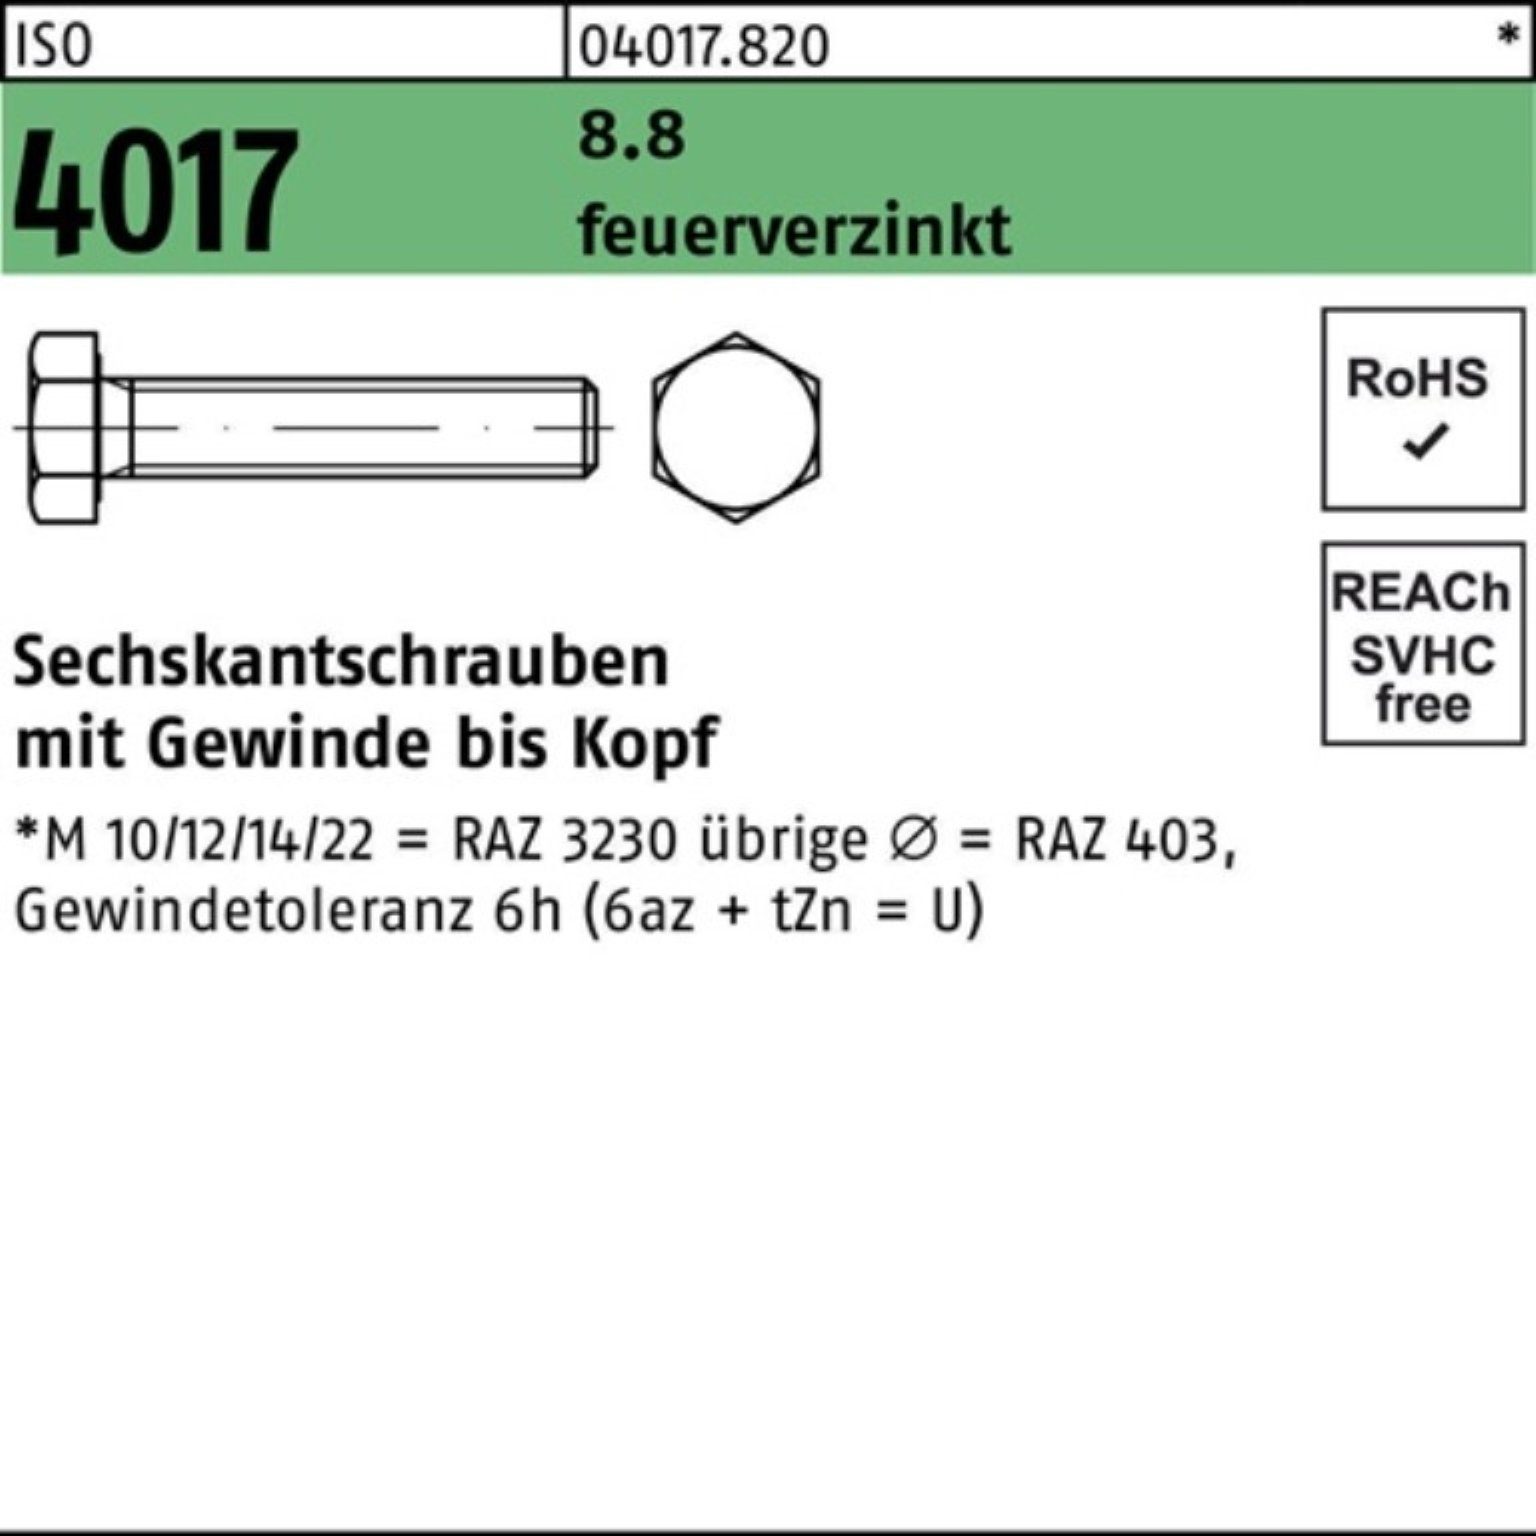 Bufab Sechskantschraube 100er Pack Sechskantschraube 4017 feuerverz. St VG M20x 8.8 1 140 ISO